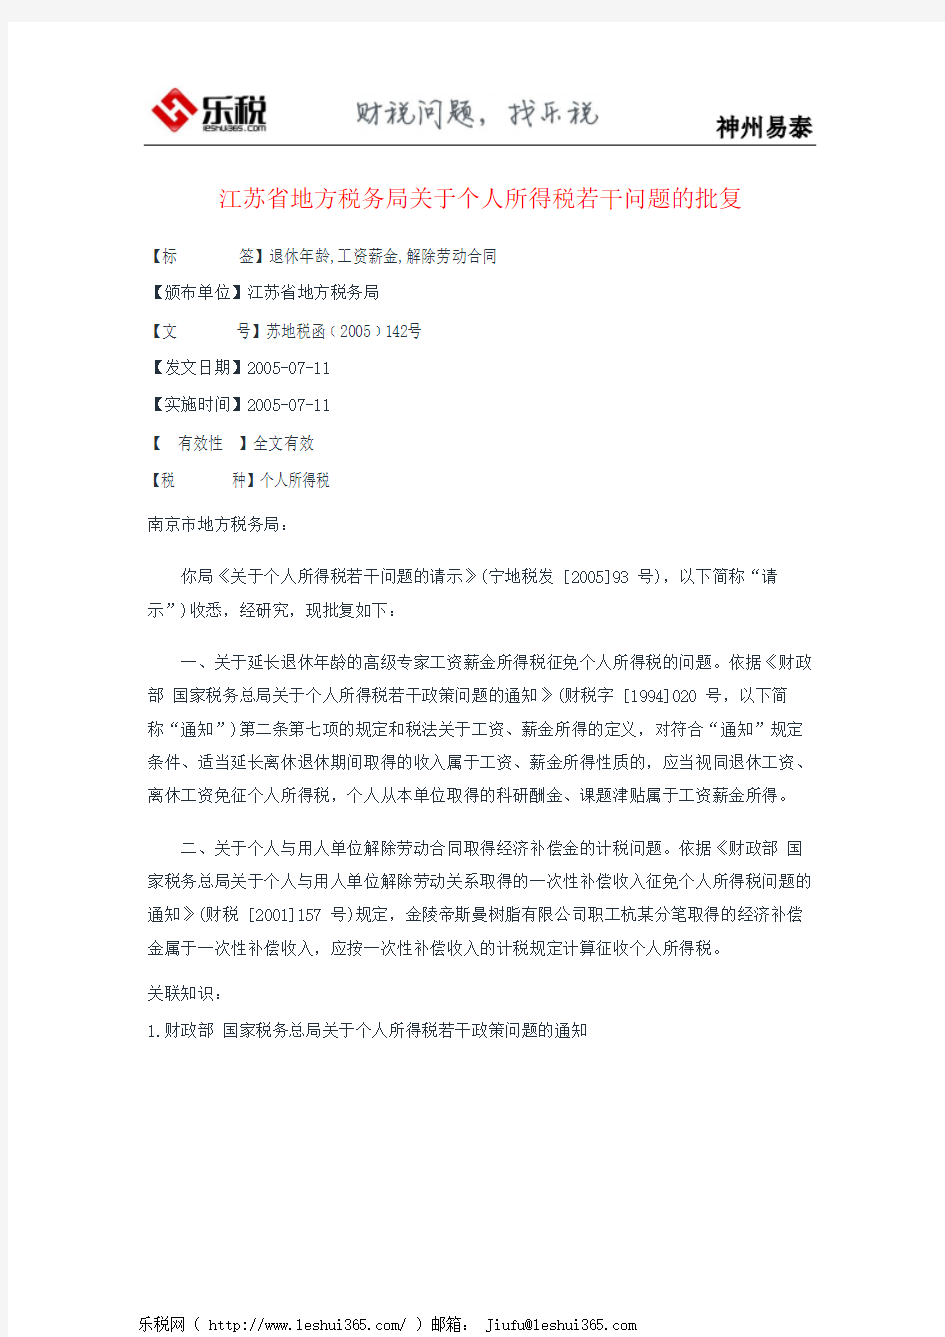 江苏省地方税务局关于个人所得税若干问题的批复